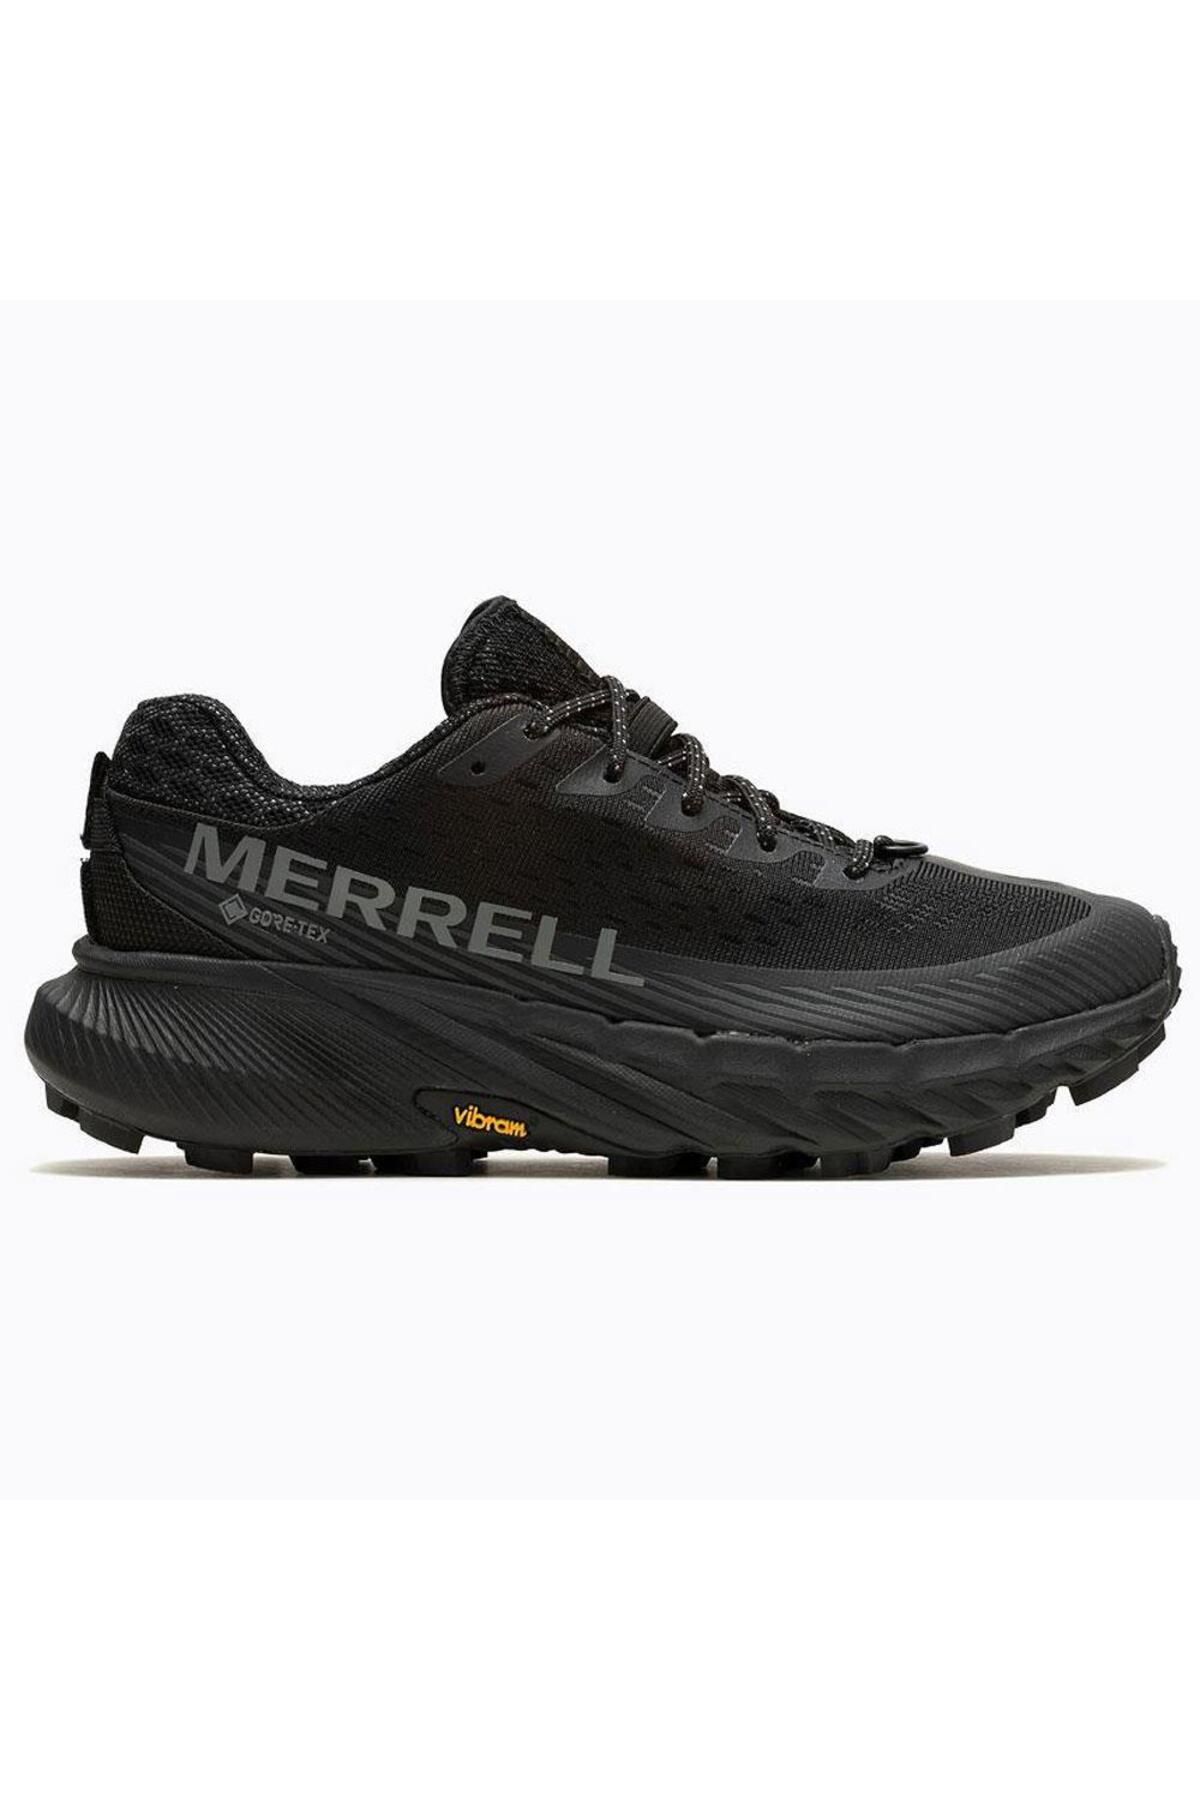 Merrell Agility Peak 5 Gtx Kadin Spor Ayakkabısı J067790